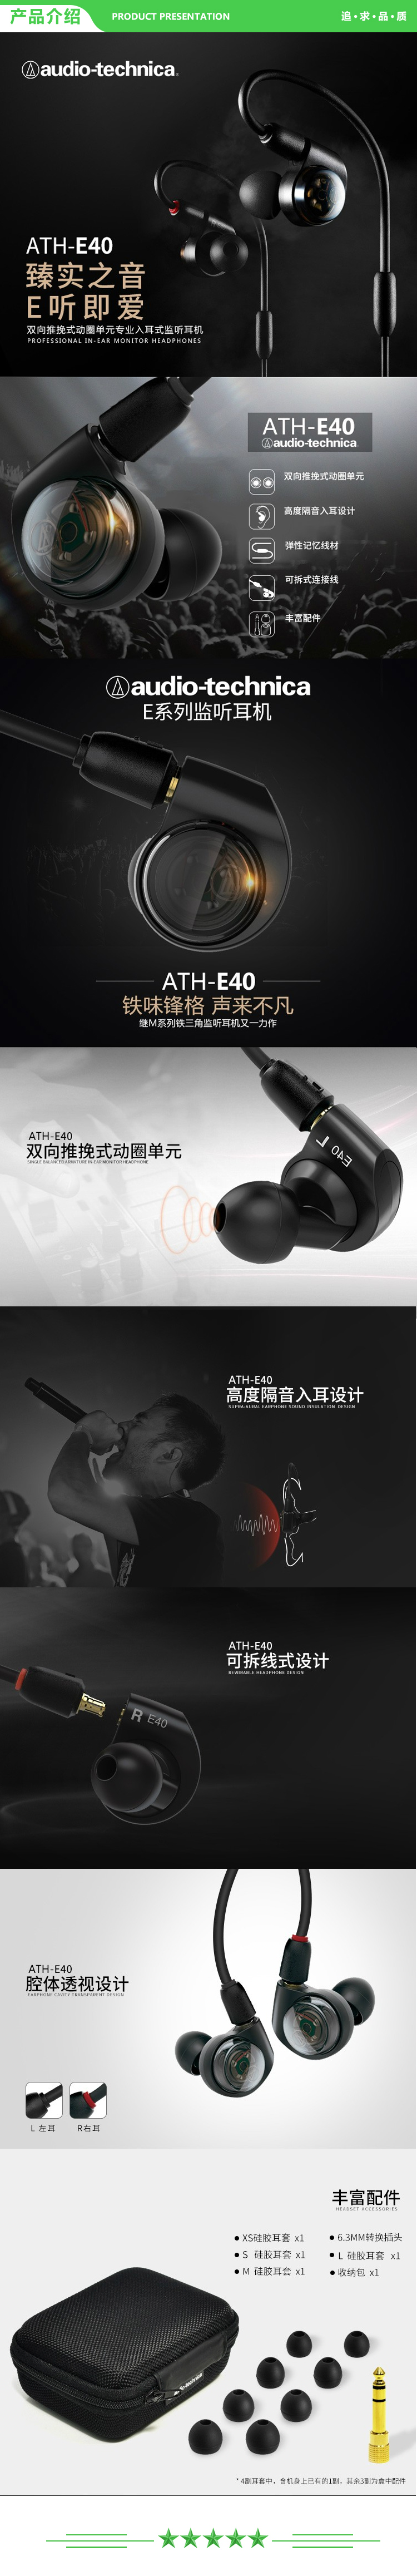 铁三角 Audio-technica ATH-E40 专业监听双动圈入耳式耳机 .jpg